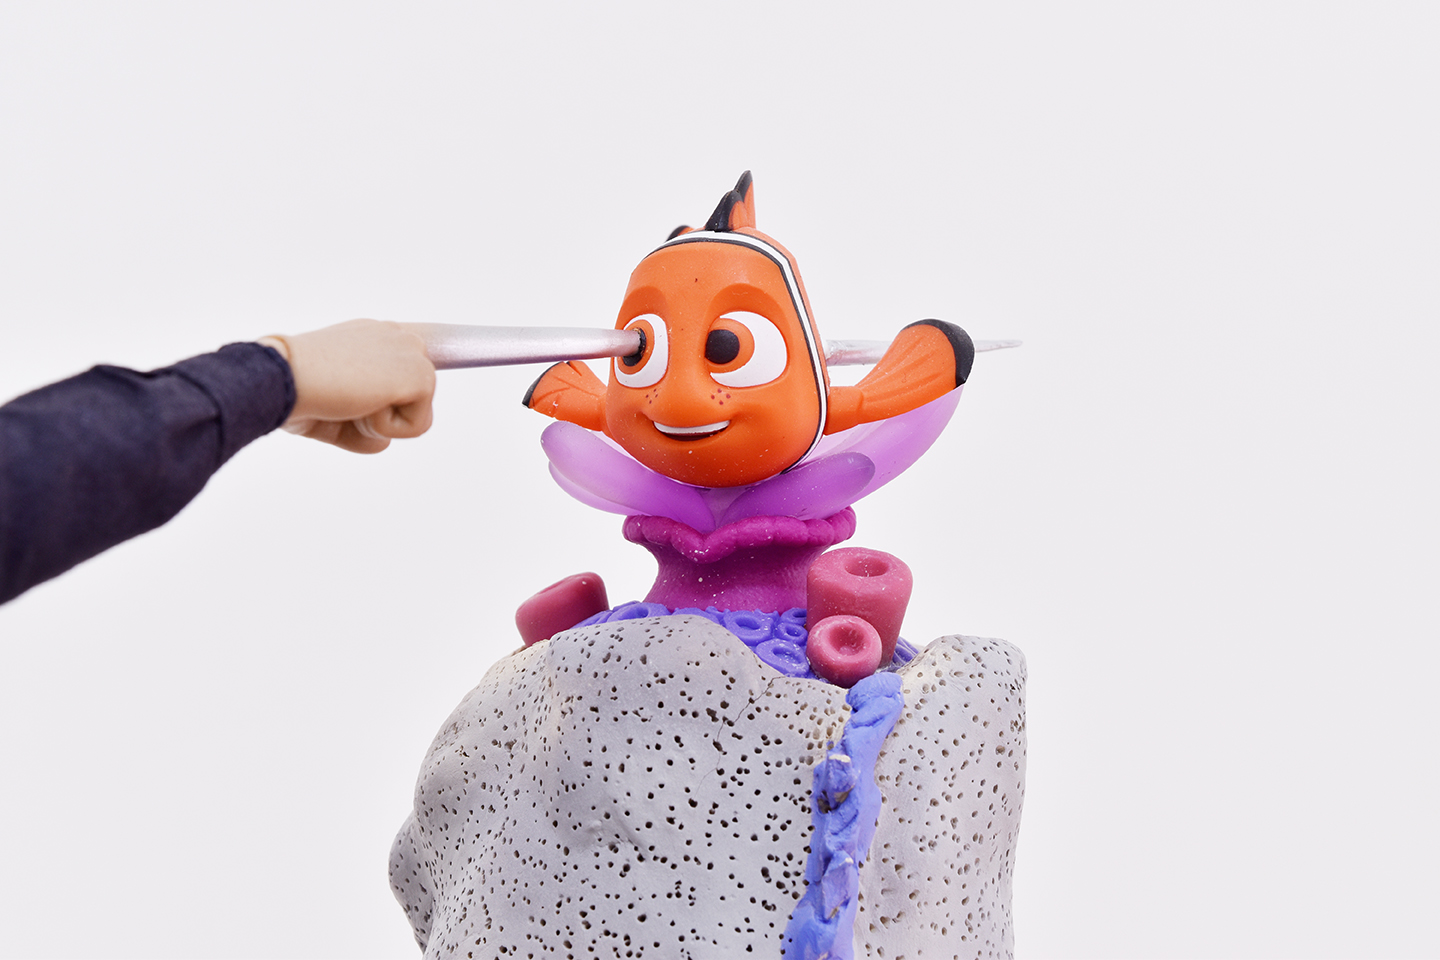 Thomas Hämén, Let your animation run wild, 2017, Argilla, pittura acrilica, metamorfosi, Hot Toys T1000 da collezione, Alla ricerca di Nemo. 35 x 25 x 15 cm (dettaglio).